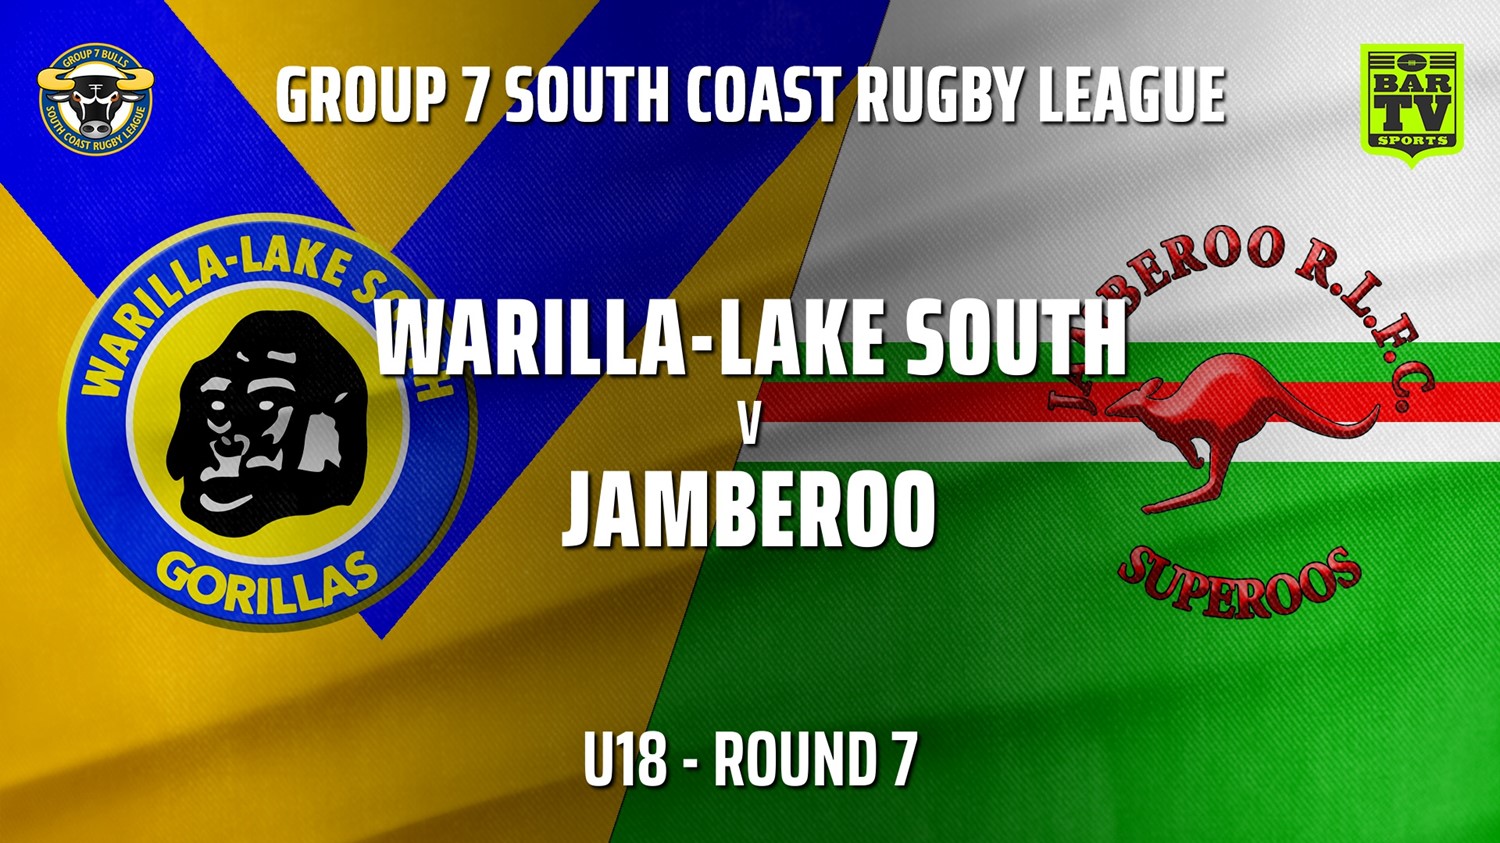 210530-Group 7 RL Round 7 - U18 - Warilla-Lake South v Jamberoo Slate Image